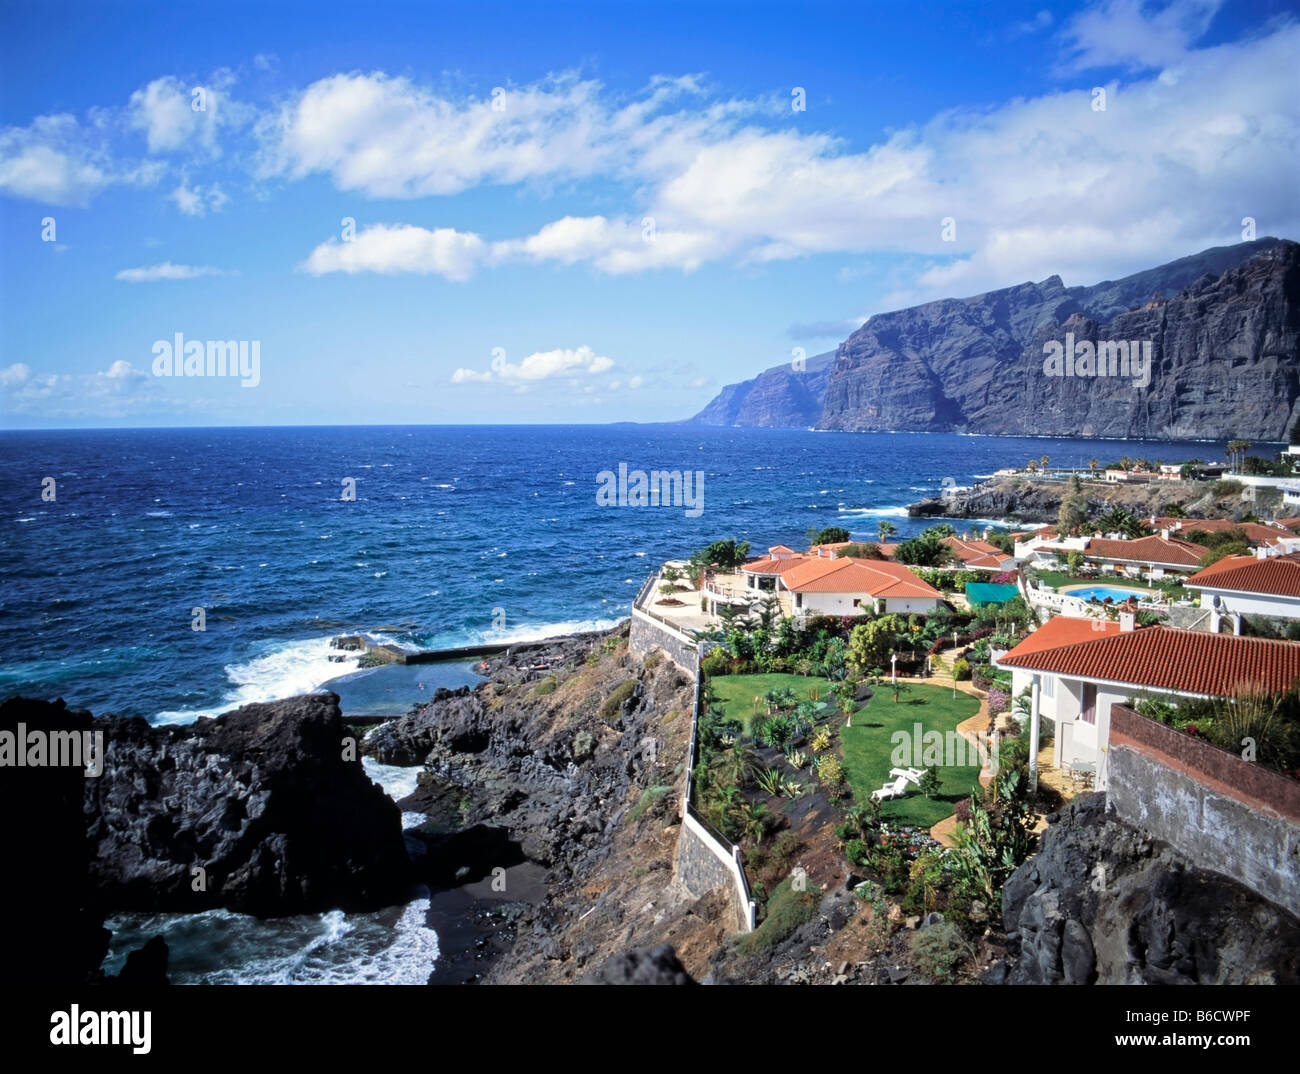 Puerto santiago tenerife spain fotografías e imágenes de alta resolución -  Alamy